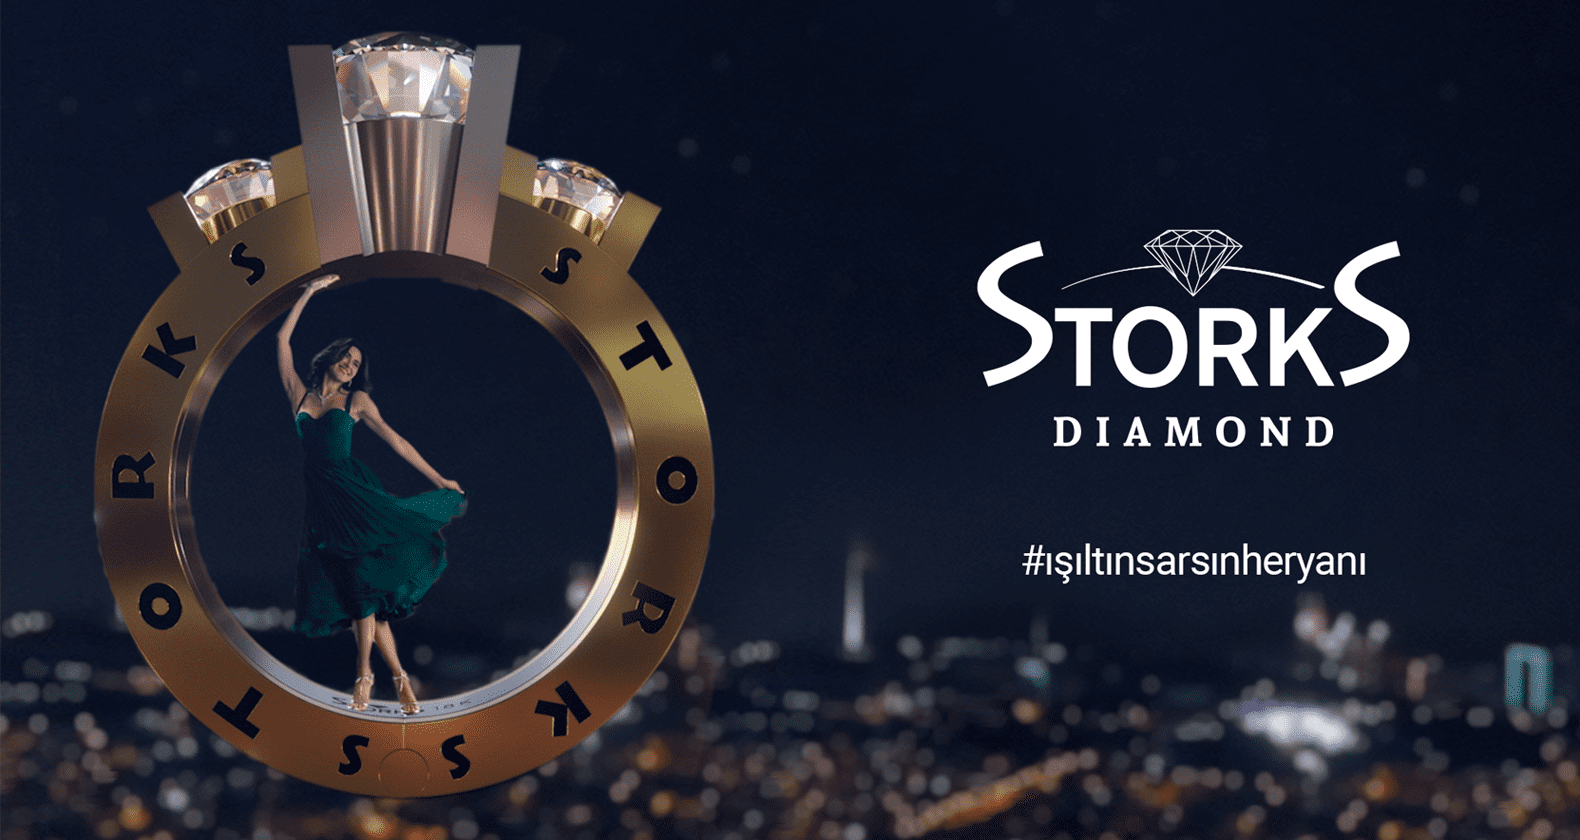  Storks Diamond Yeni Marka Yüzü Nesrin Cavadzade ile Yenileniyor